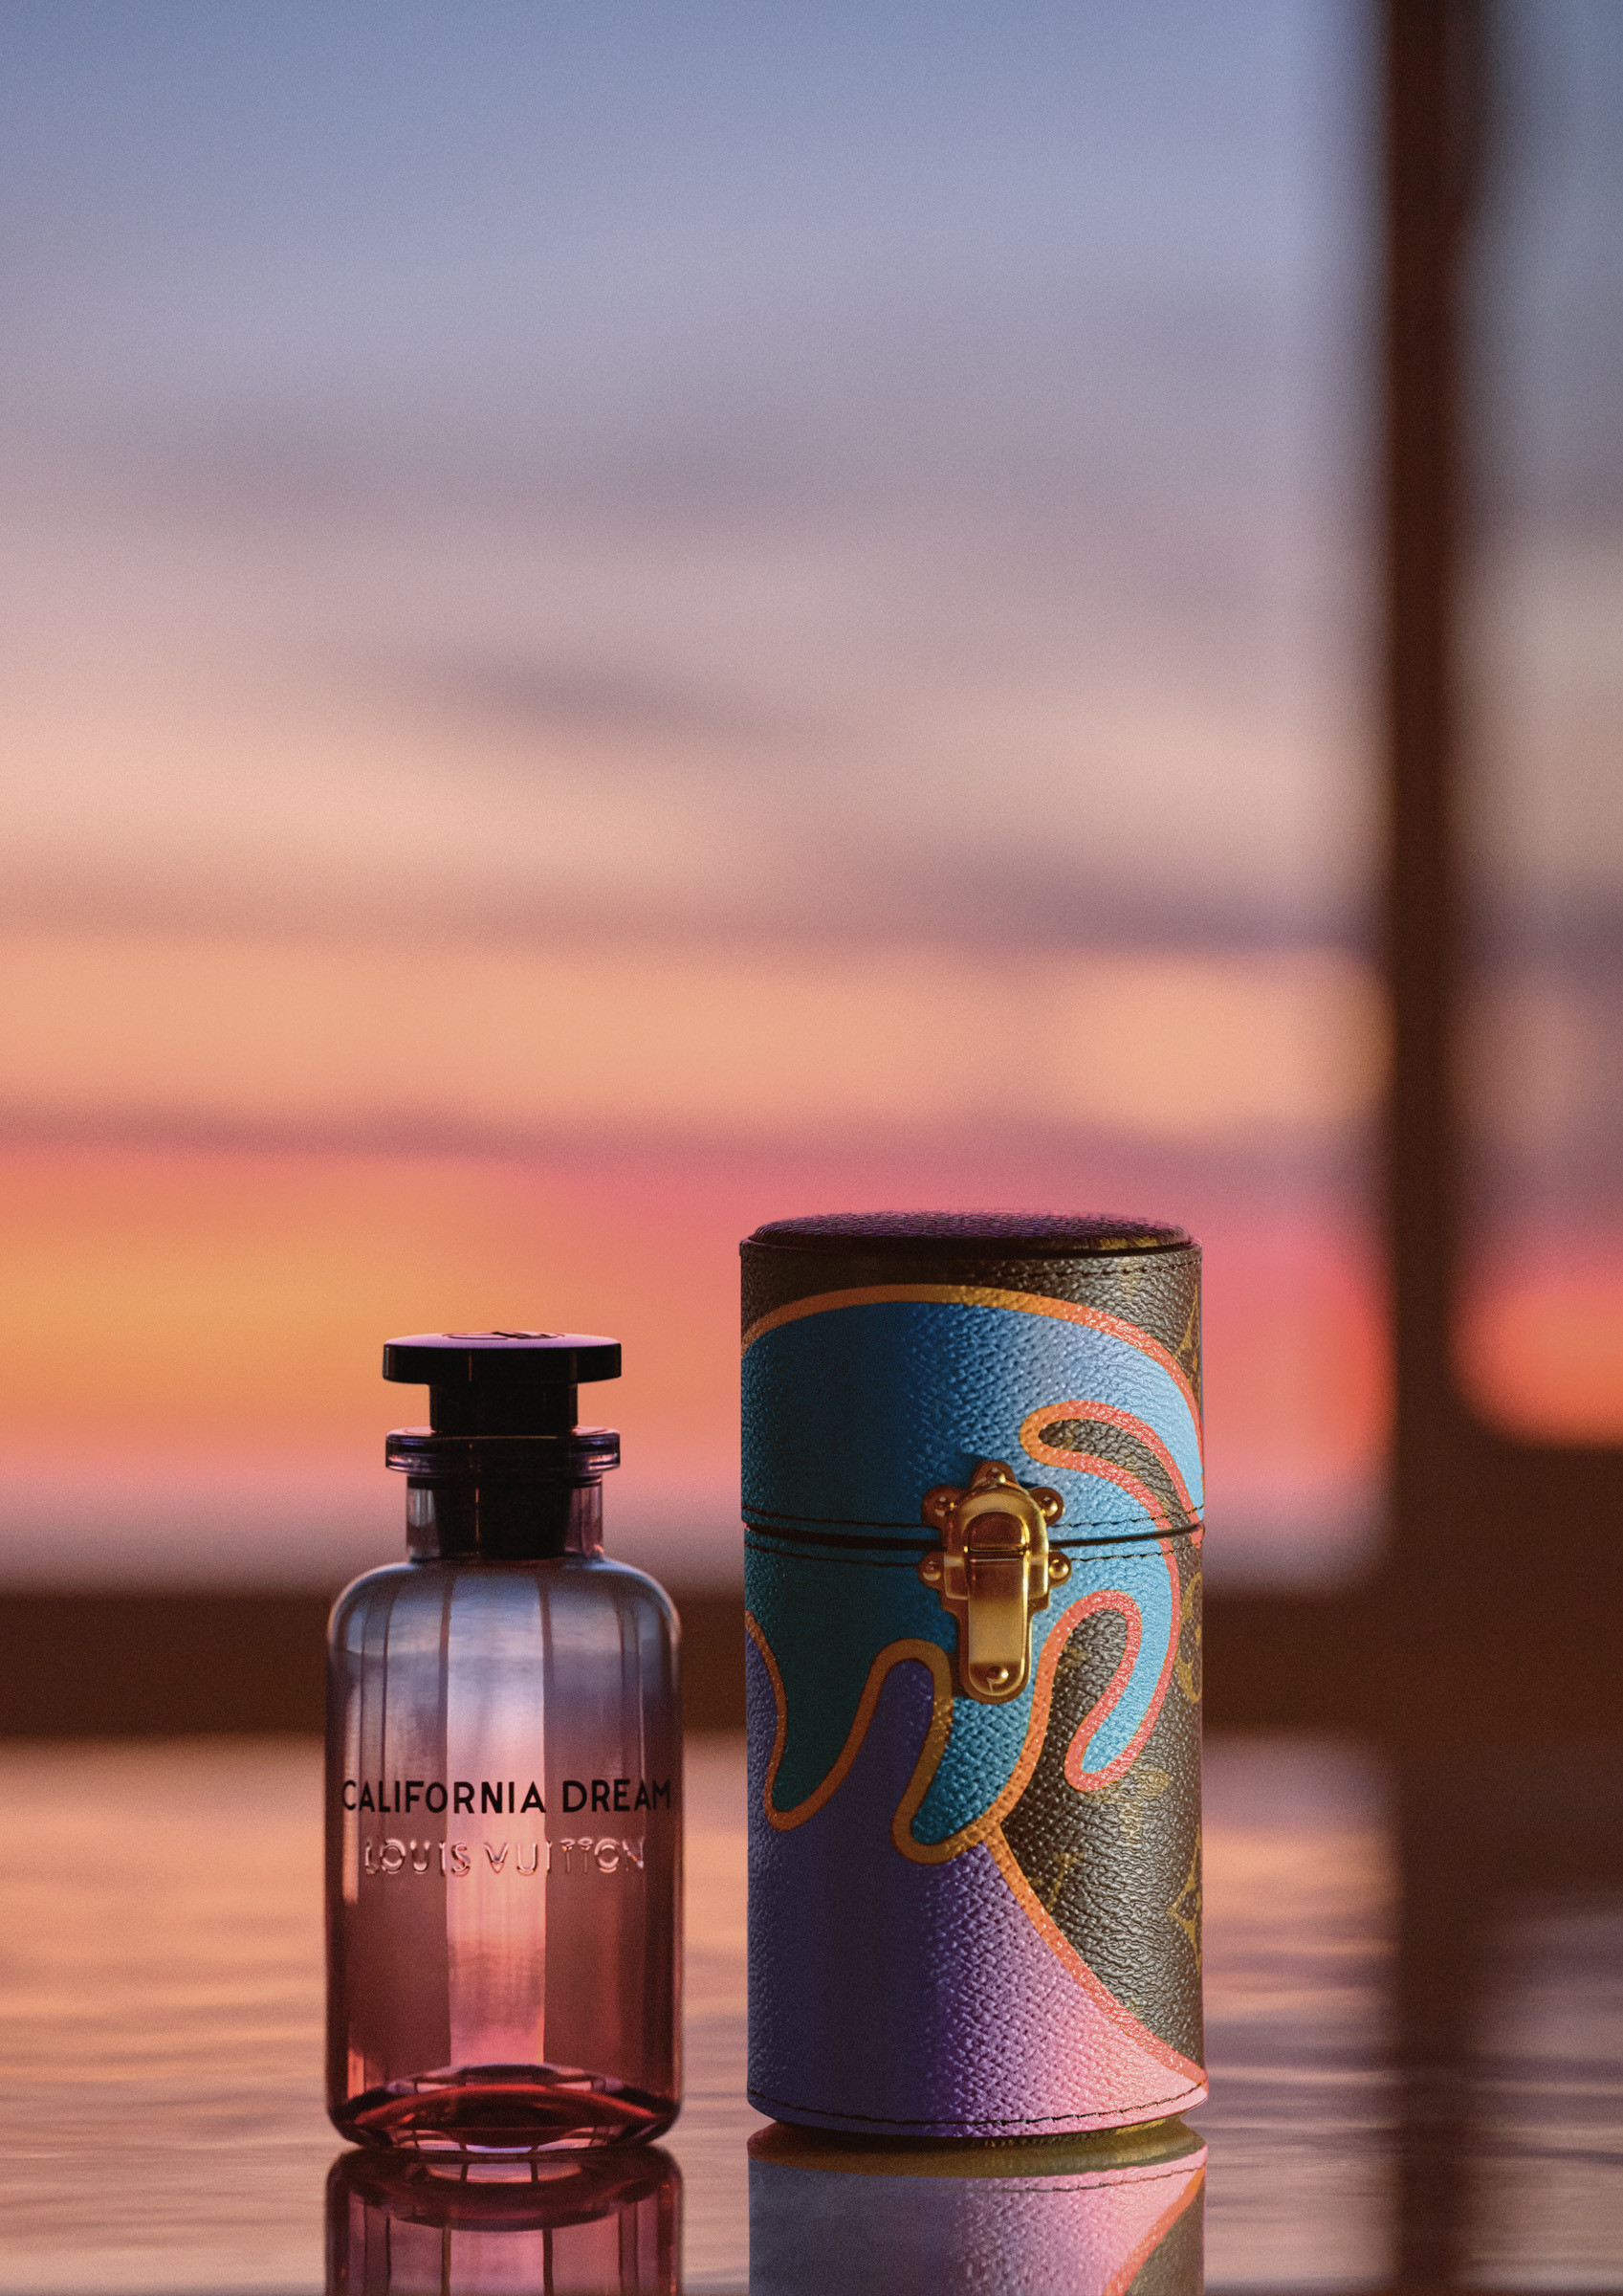 ルイ・ヴィトン」新作香水はカリフォルニアのサンセットをイメージ、マンダリンやアンブレットシードを調香